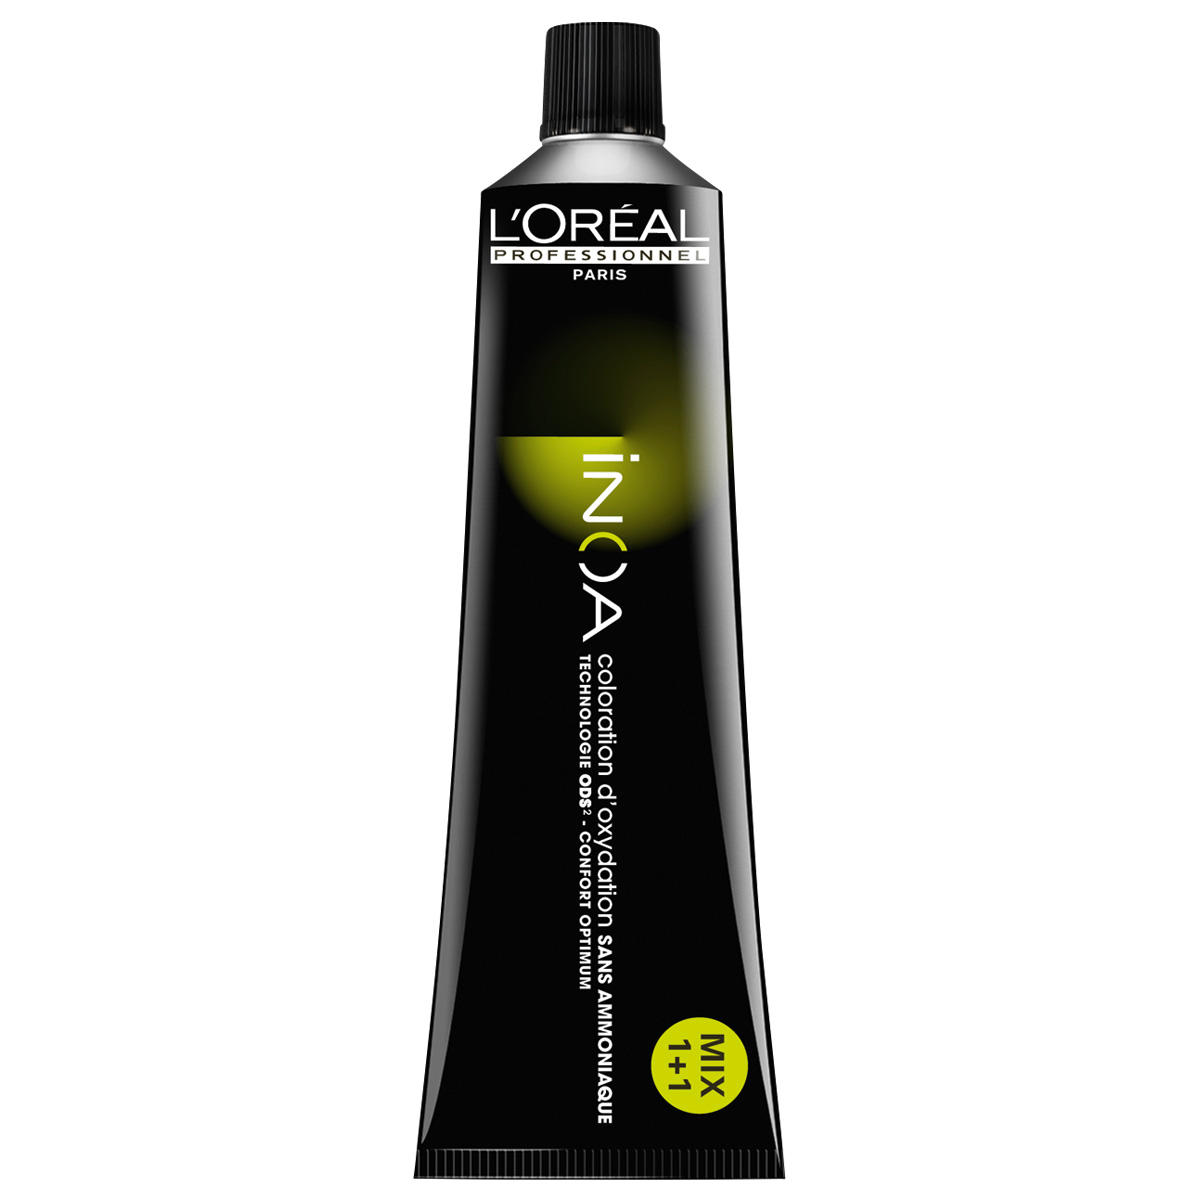 L'Oréal Professionnel Paris Coloration 10.1 Rubio platino ceniza, tubo 60 ml